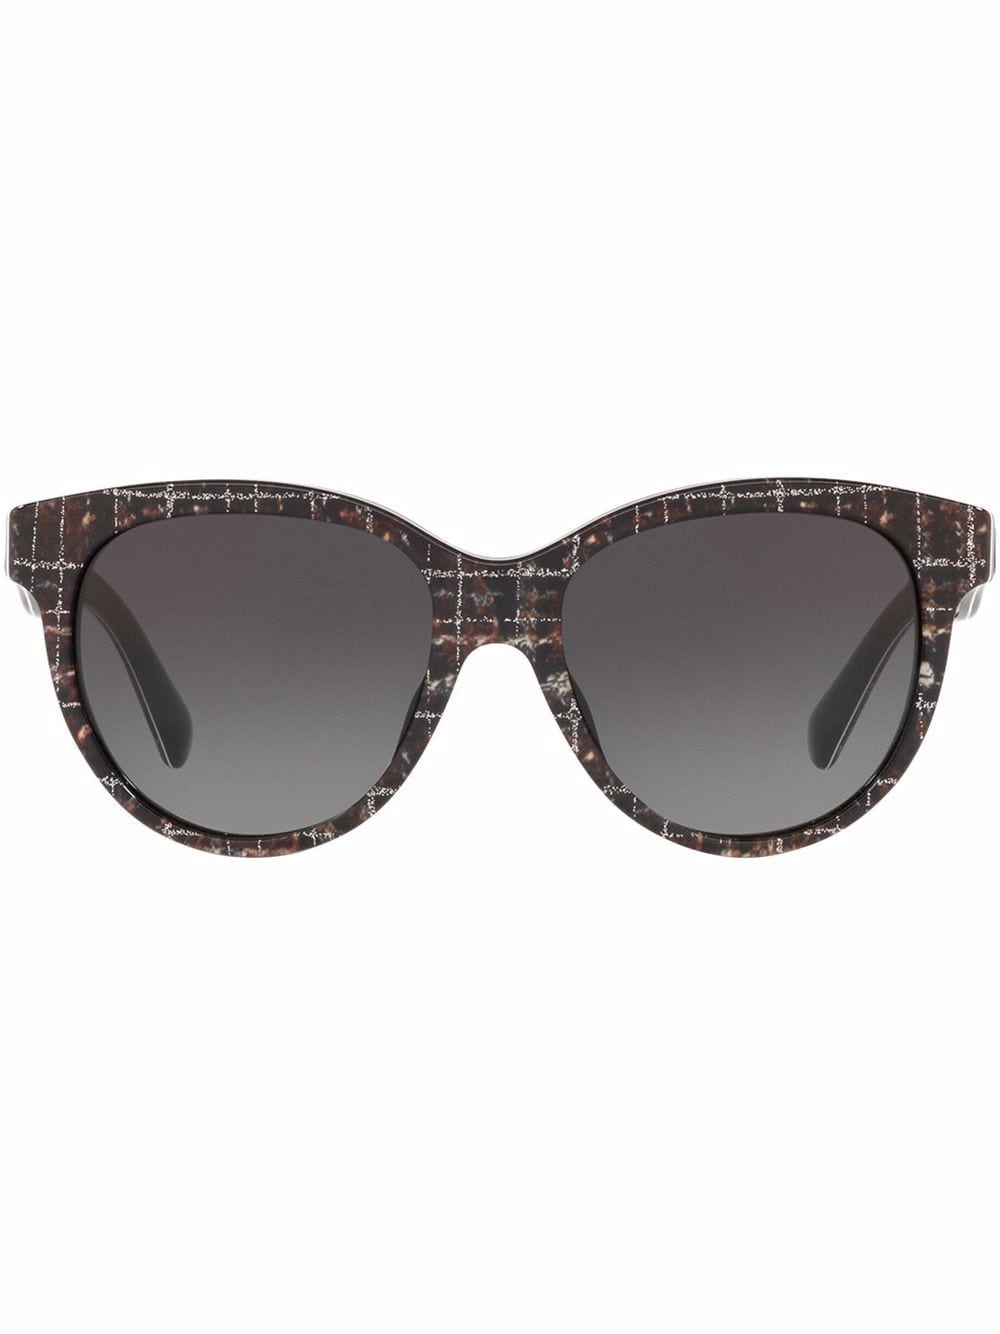 фото Dolce & gabbana eyewear солнцезащитные очки с принтом